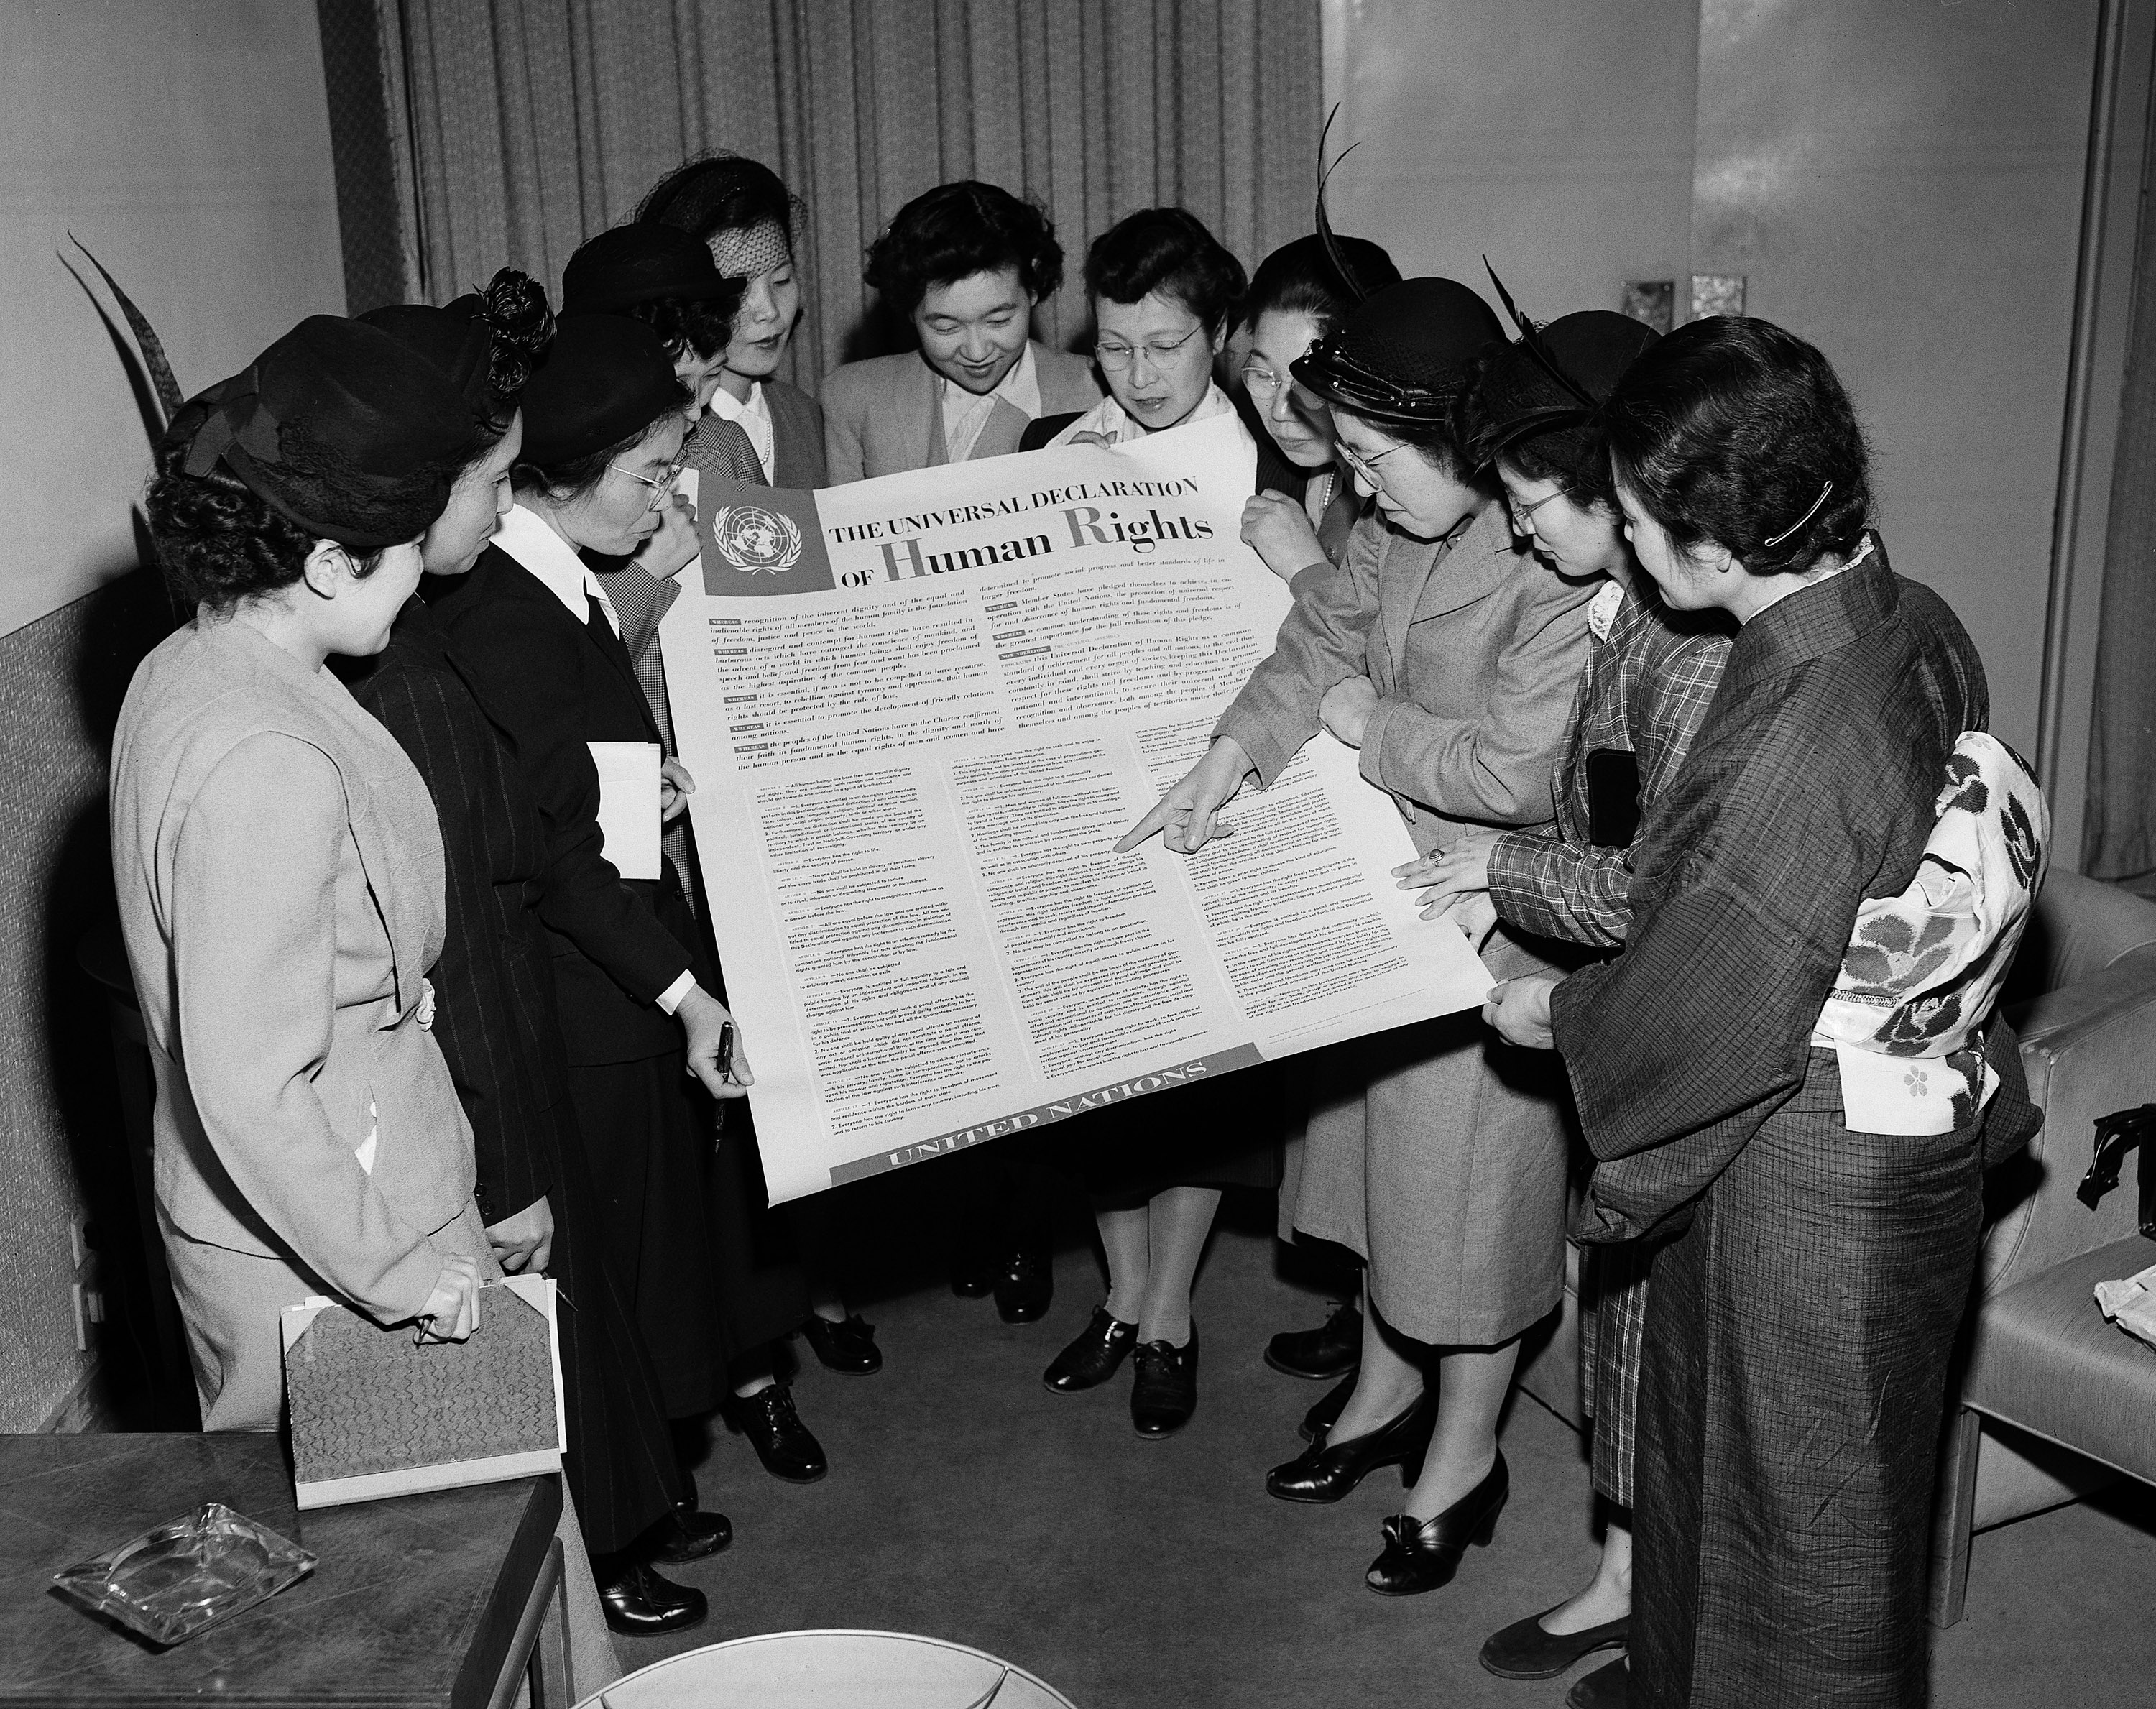 Конвенция 1959